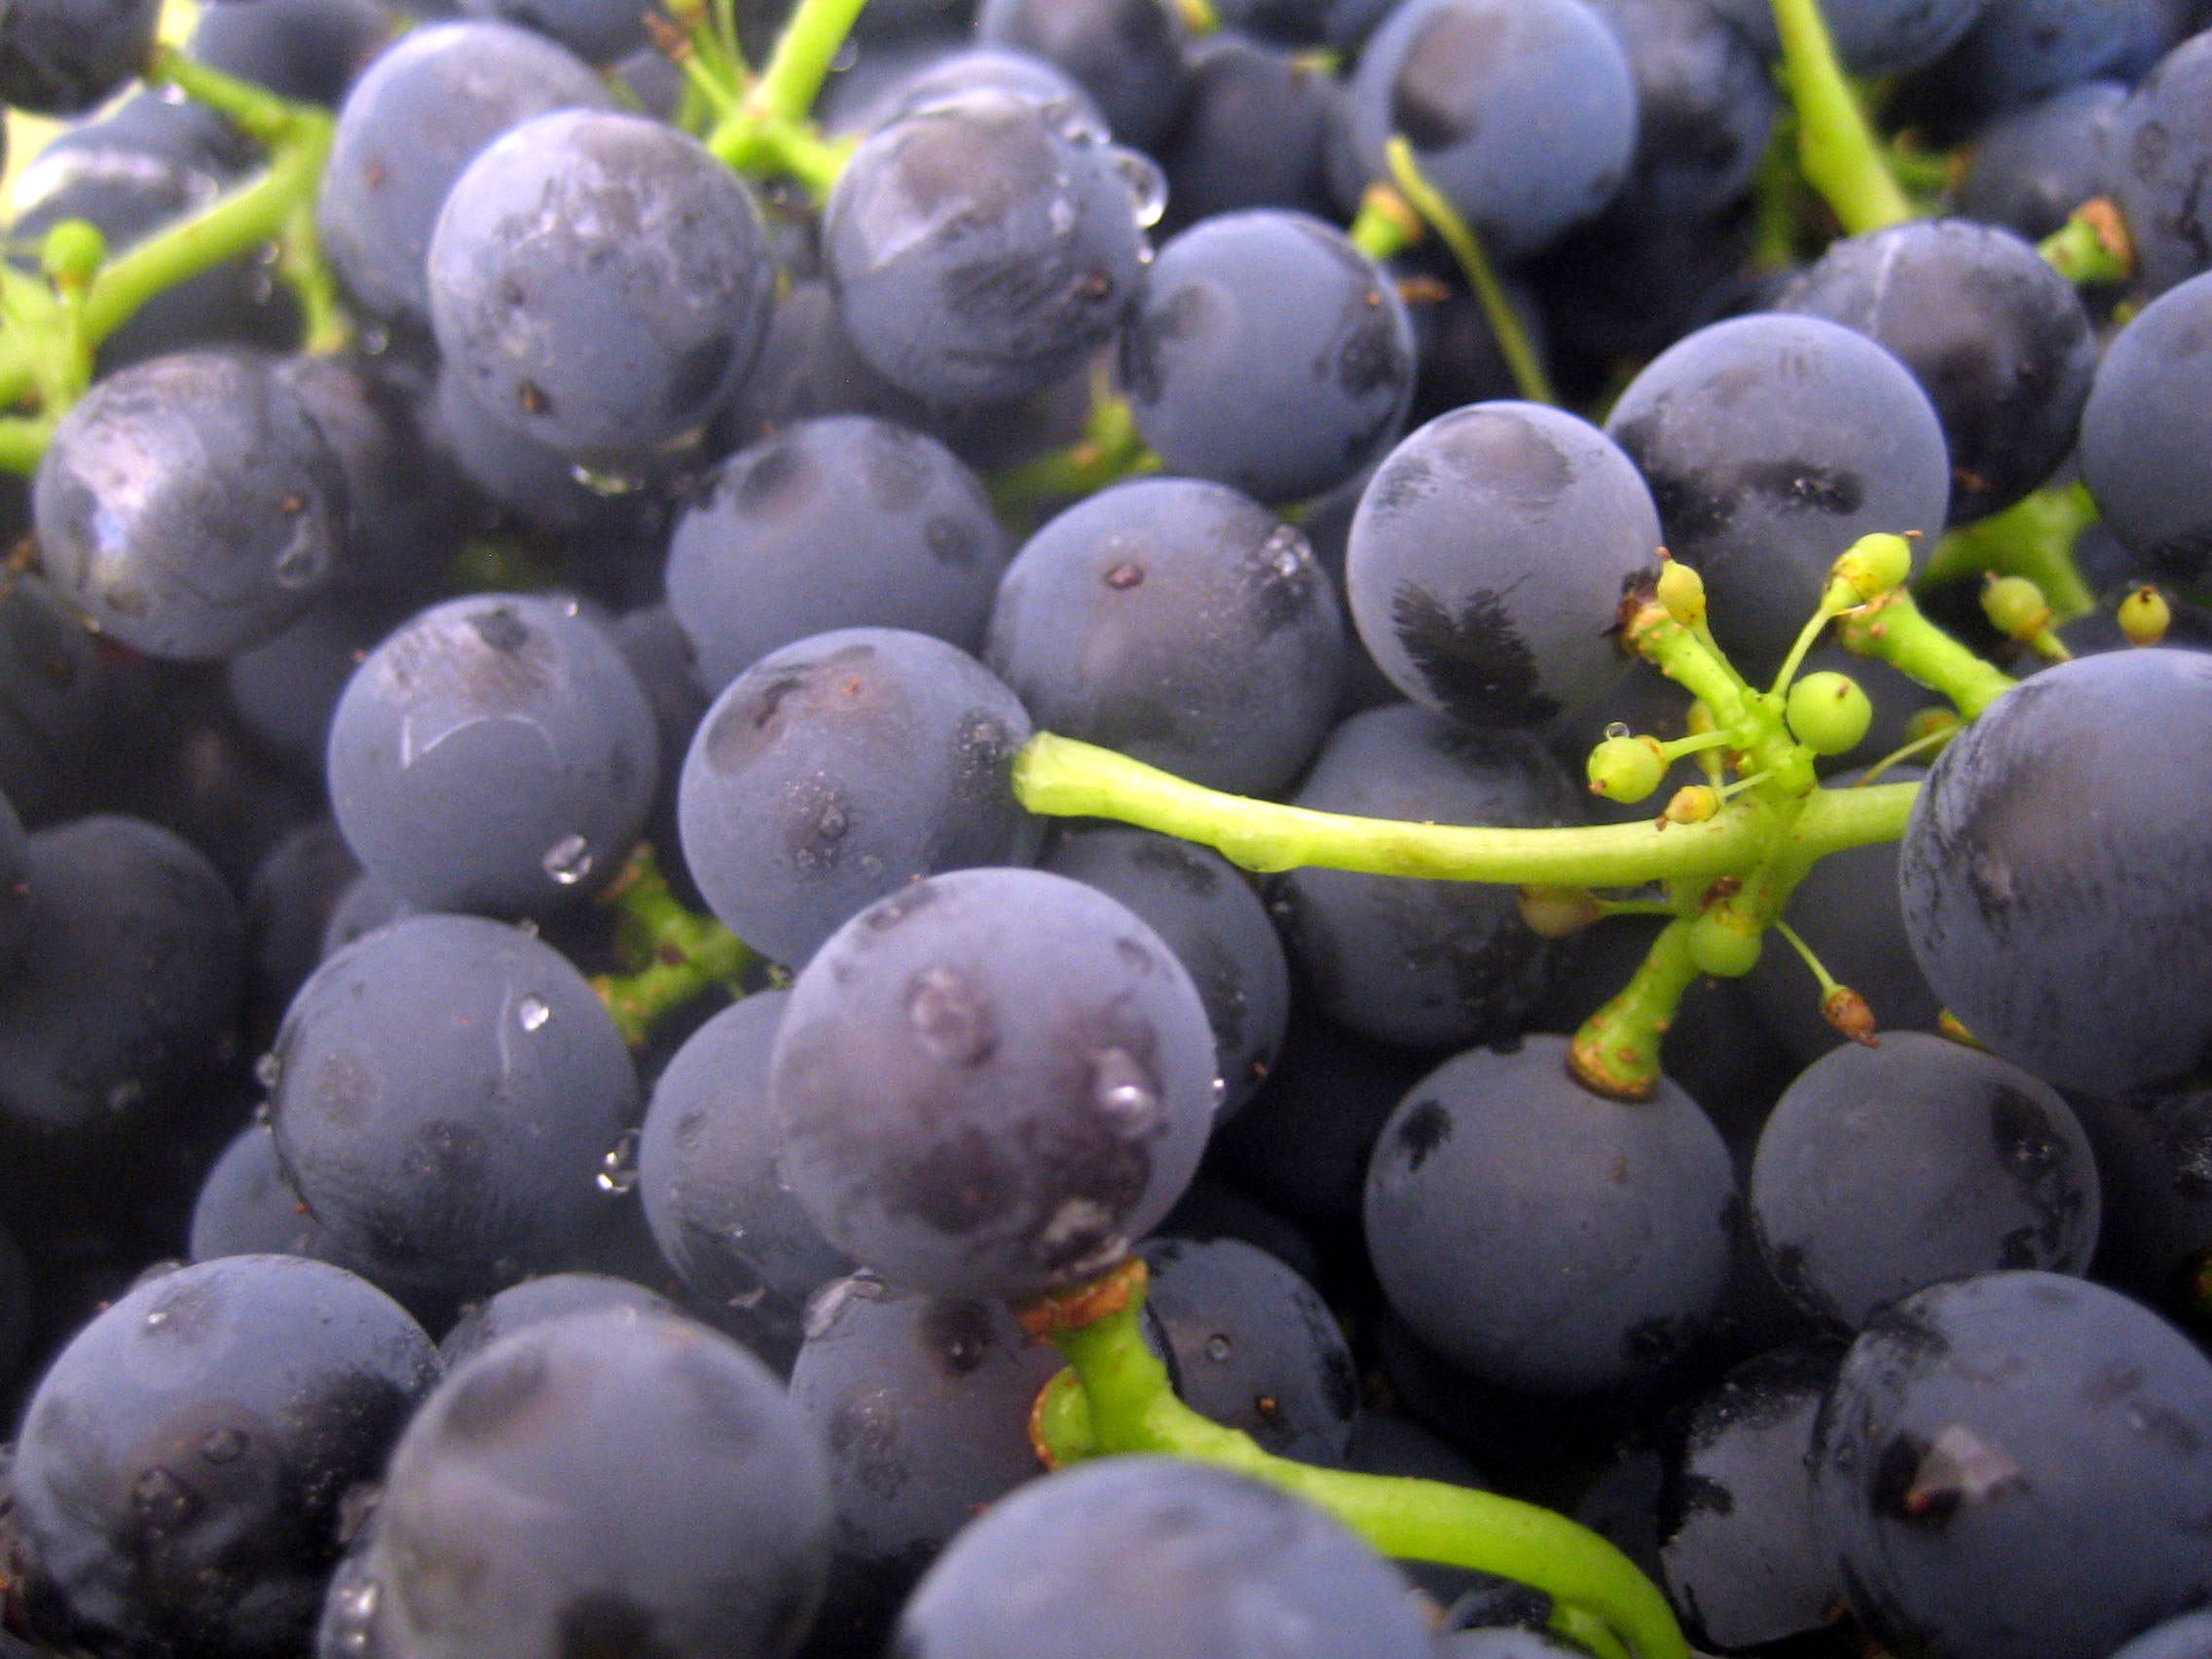 नाशिक, पुणे, सांगली येथील द्राक्ष बागायतदार शेतकऱ्यांसाठी वरदान ठरले ‘हे’ तंत्रज्ञान…!